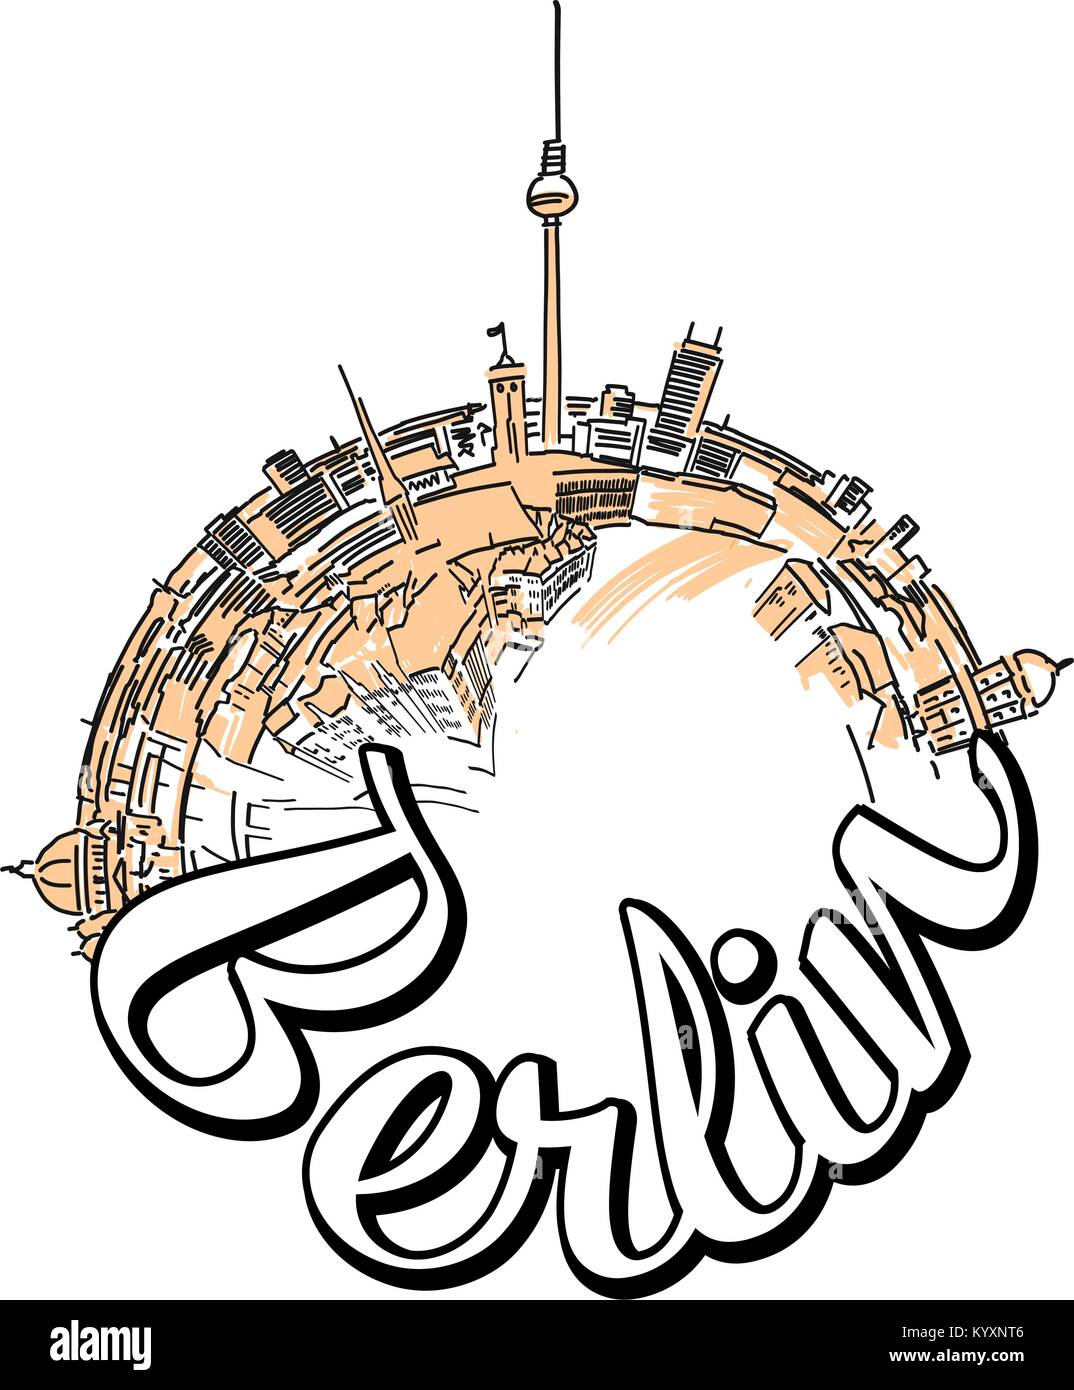 Berlin reisen logo Konzept Design. Farbige skyline Vector Illustration mit Aquarell Hintergrund und Typo. Stock Vektor